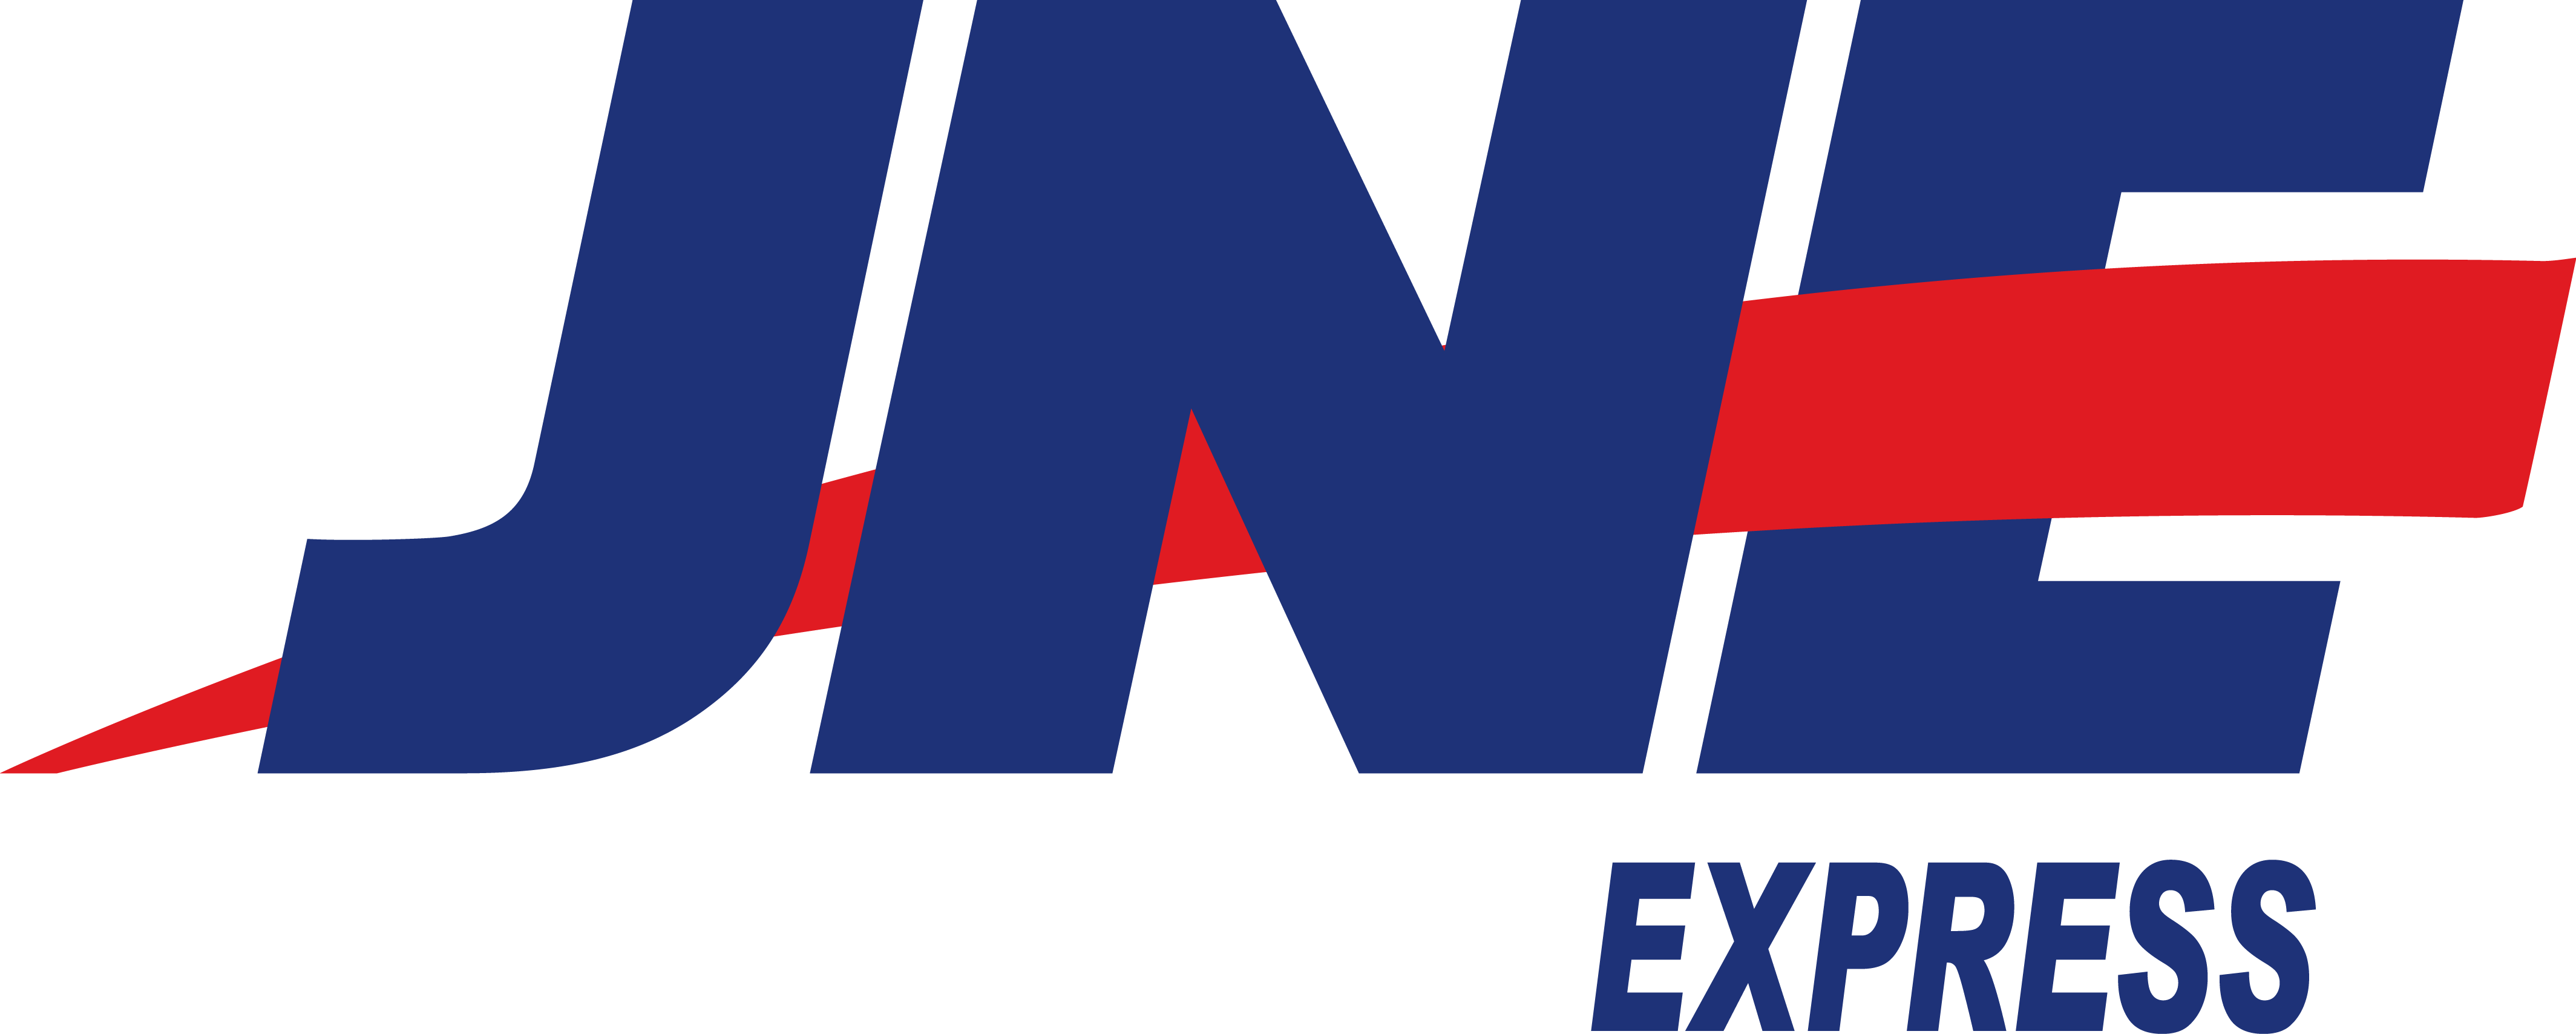 jne express logo